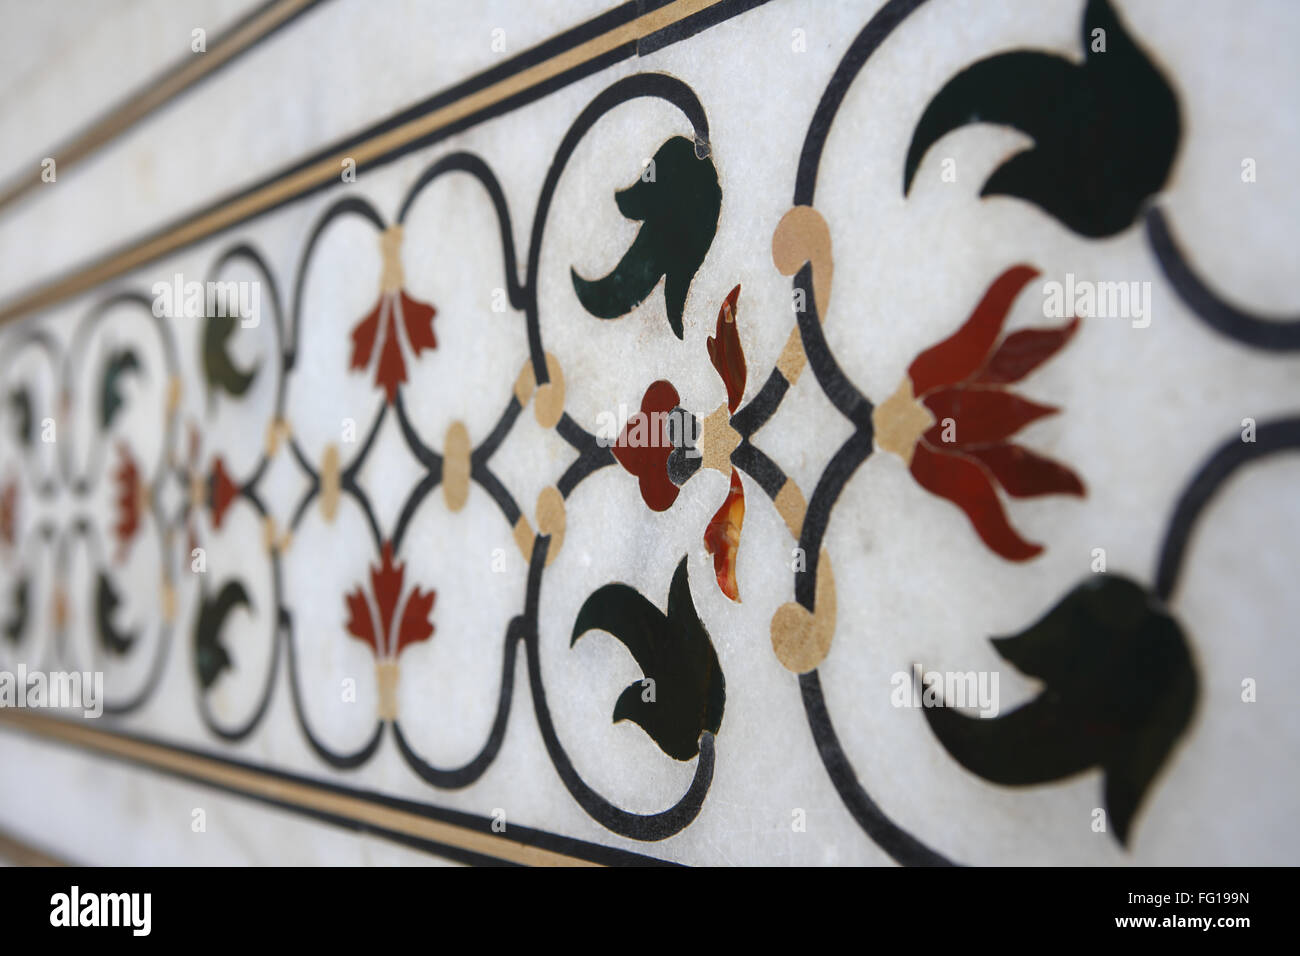 Intarsi in marmo opera di progettazioni di interbloccaggio sulla parete del Taj Mahal settimo meraviglie del mondo , Agra , Uttar Pradesh Foto Stock